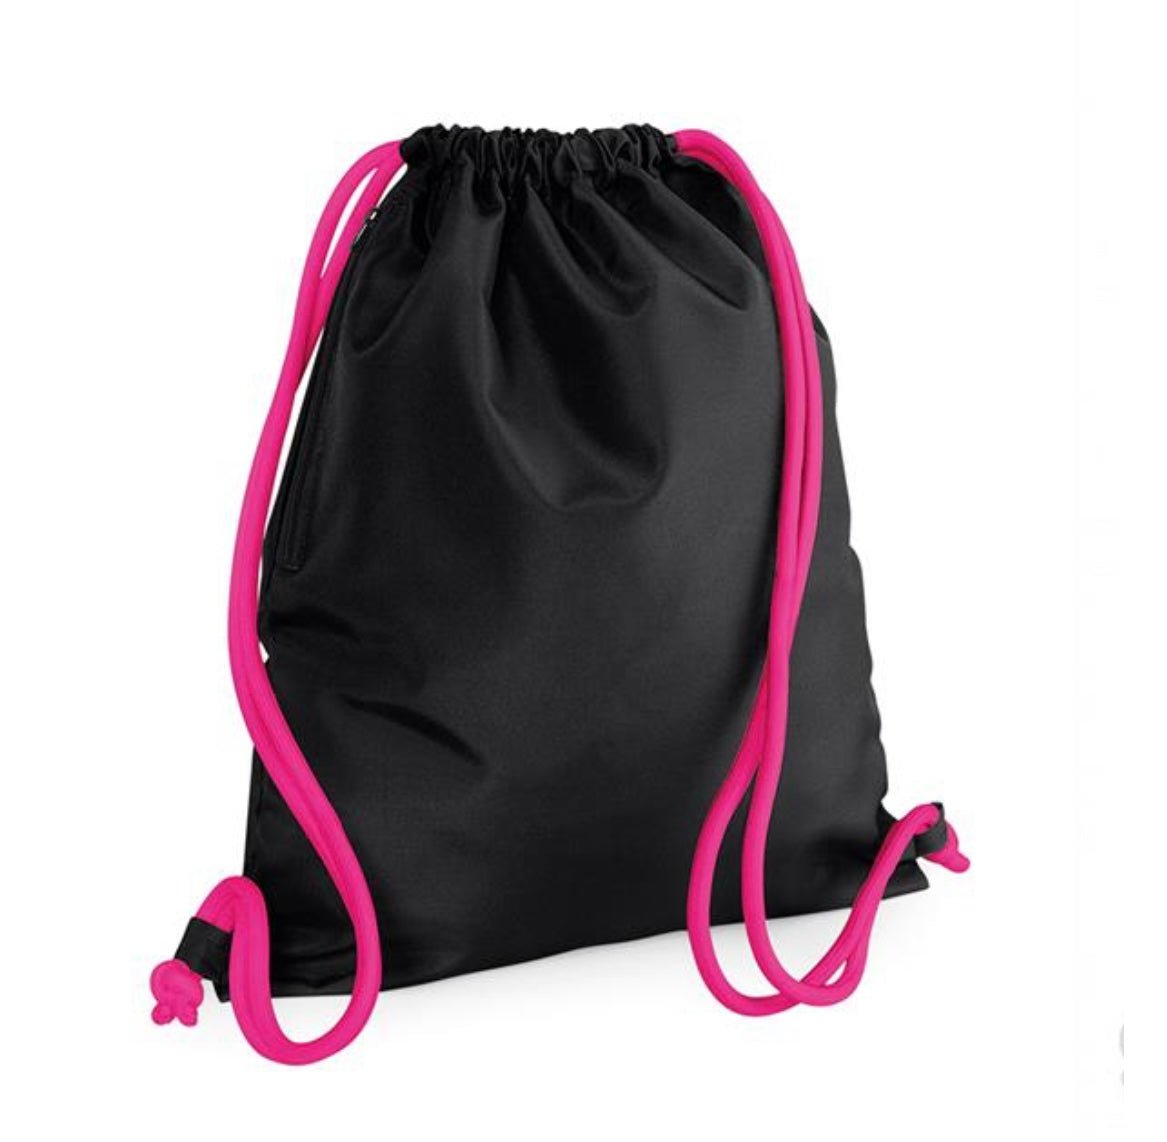 Personalised side zip drawstring bag - sweetassistant